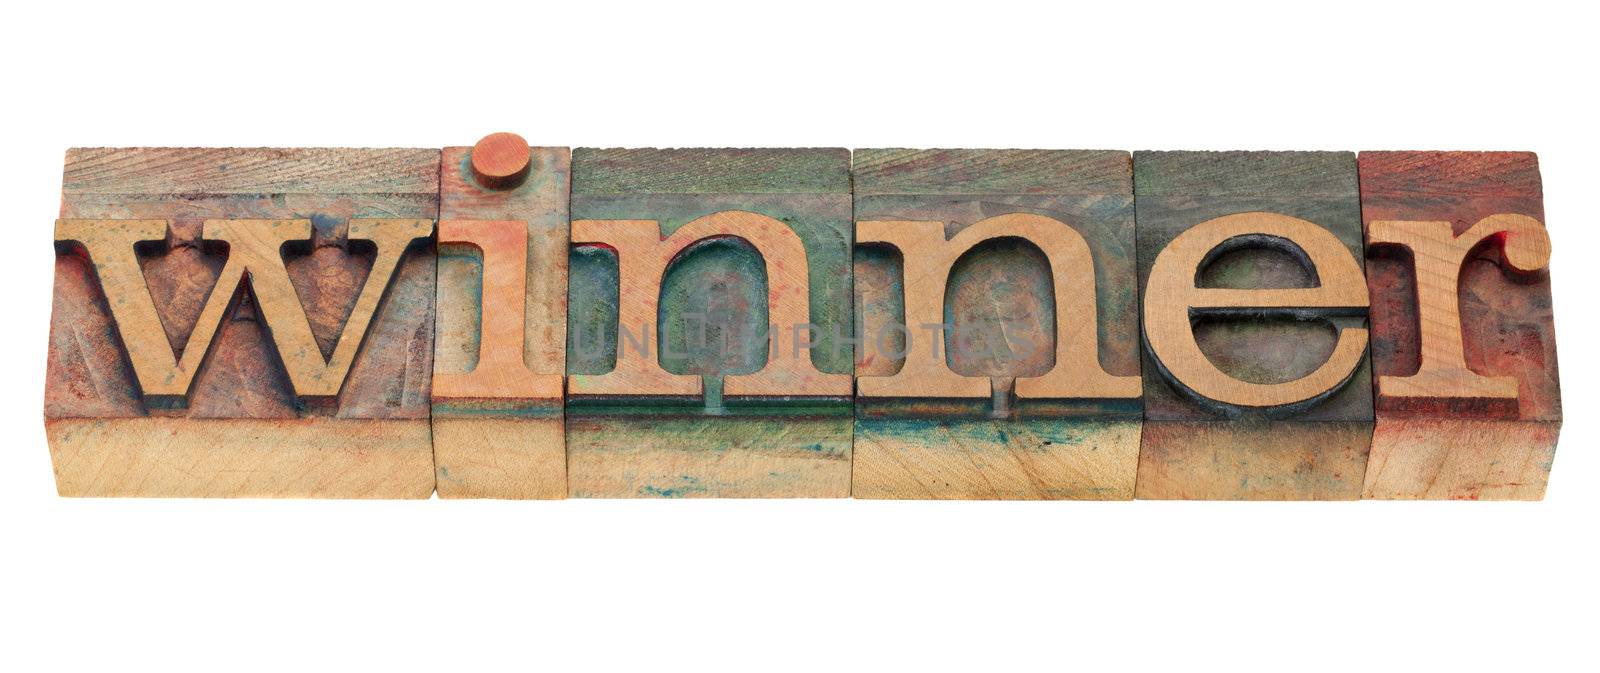 winner word in letterpress type by PixelsAway